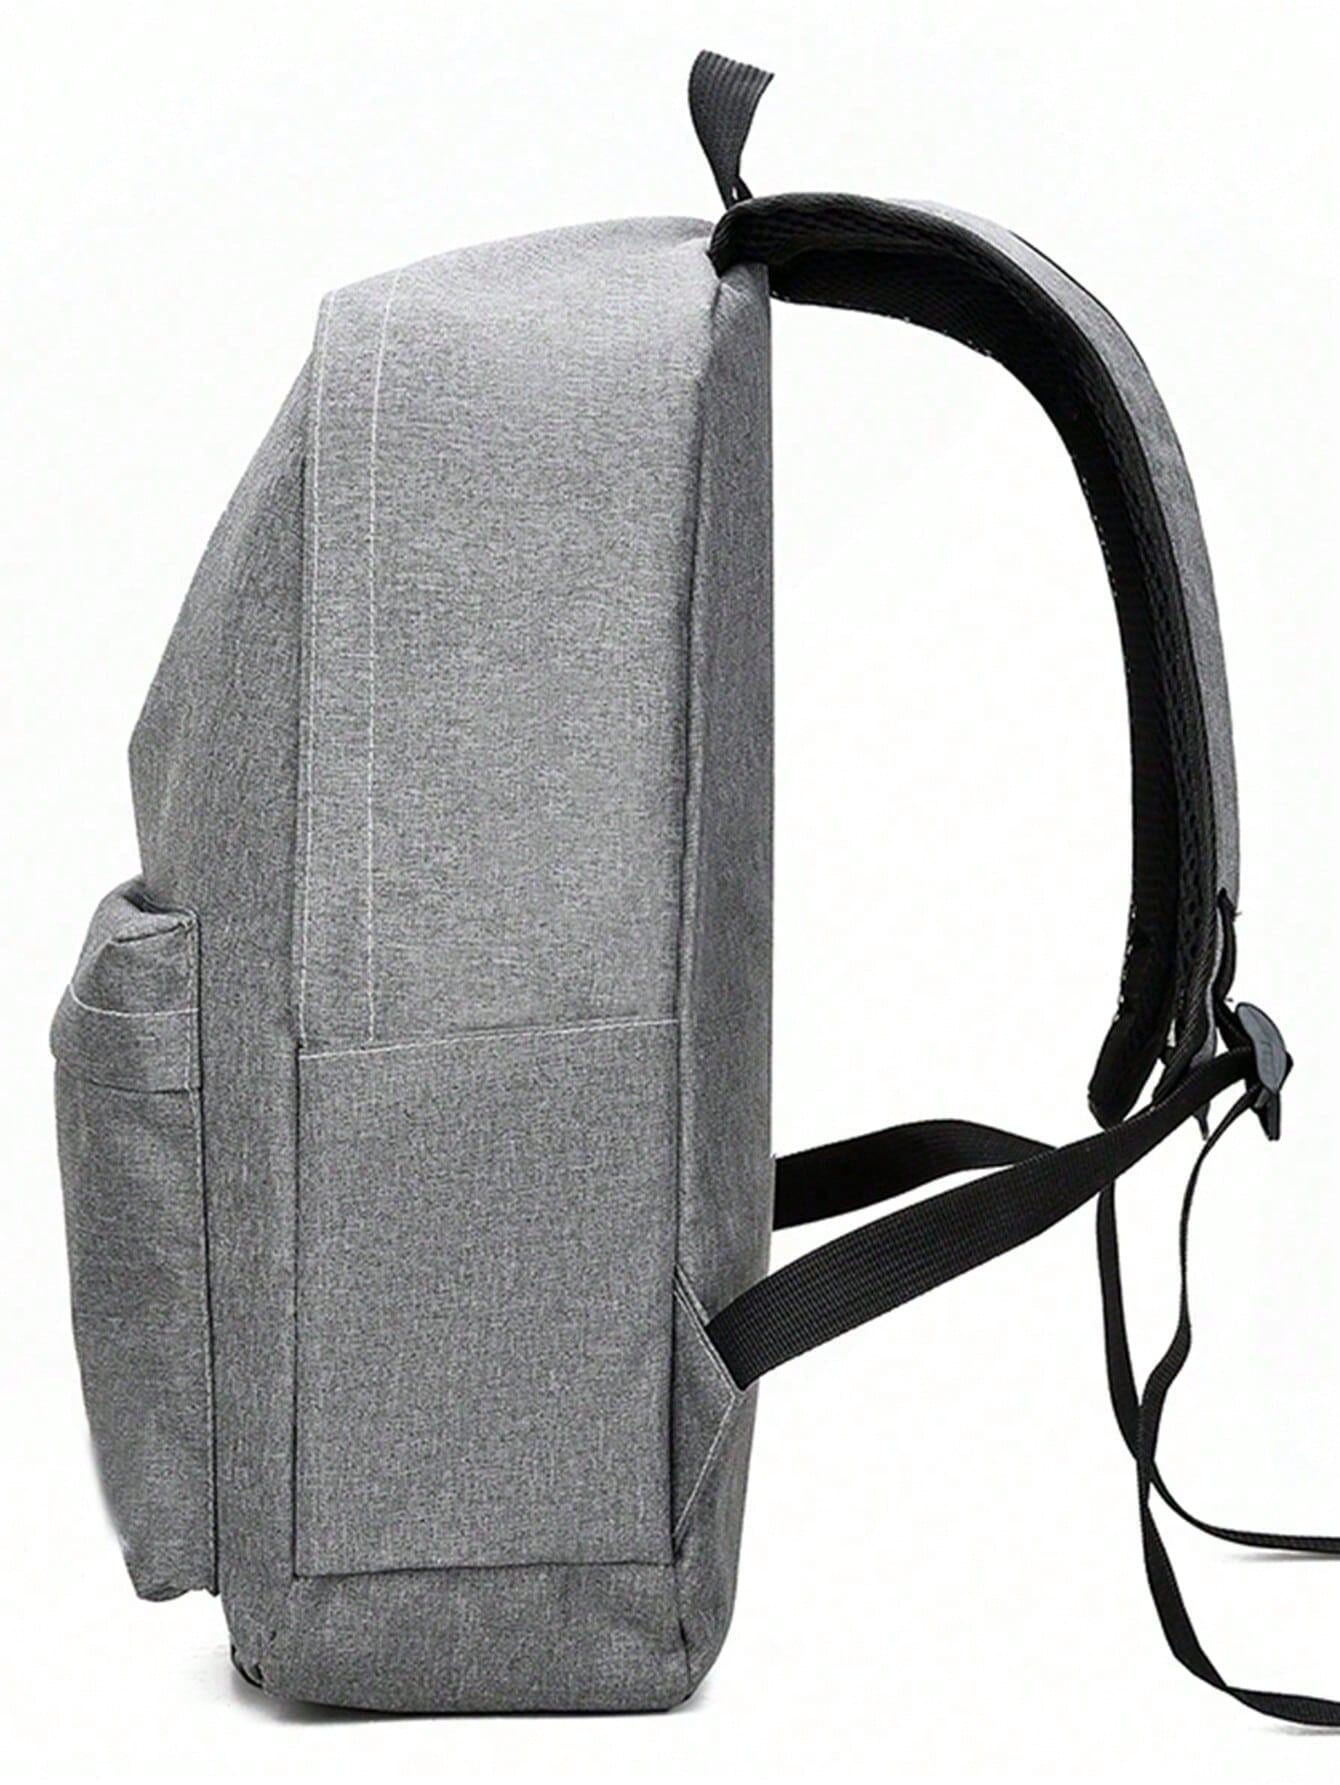 Рюкзак мужской рюкзак большой емкости рюкзак для школьников рюкзак нейлоновый рюкзак новый старший, серый рюкзак мужской нейлоновый многофункциональный большой емкости